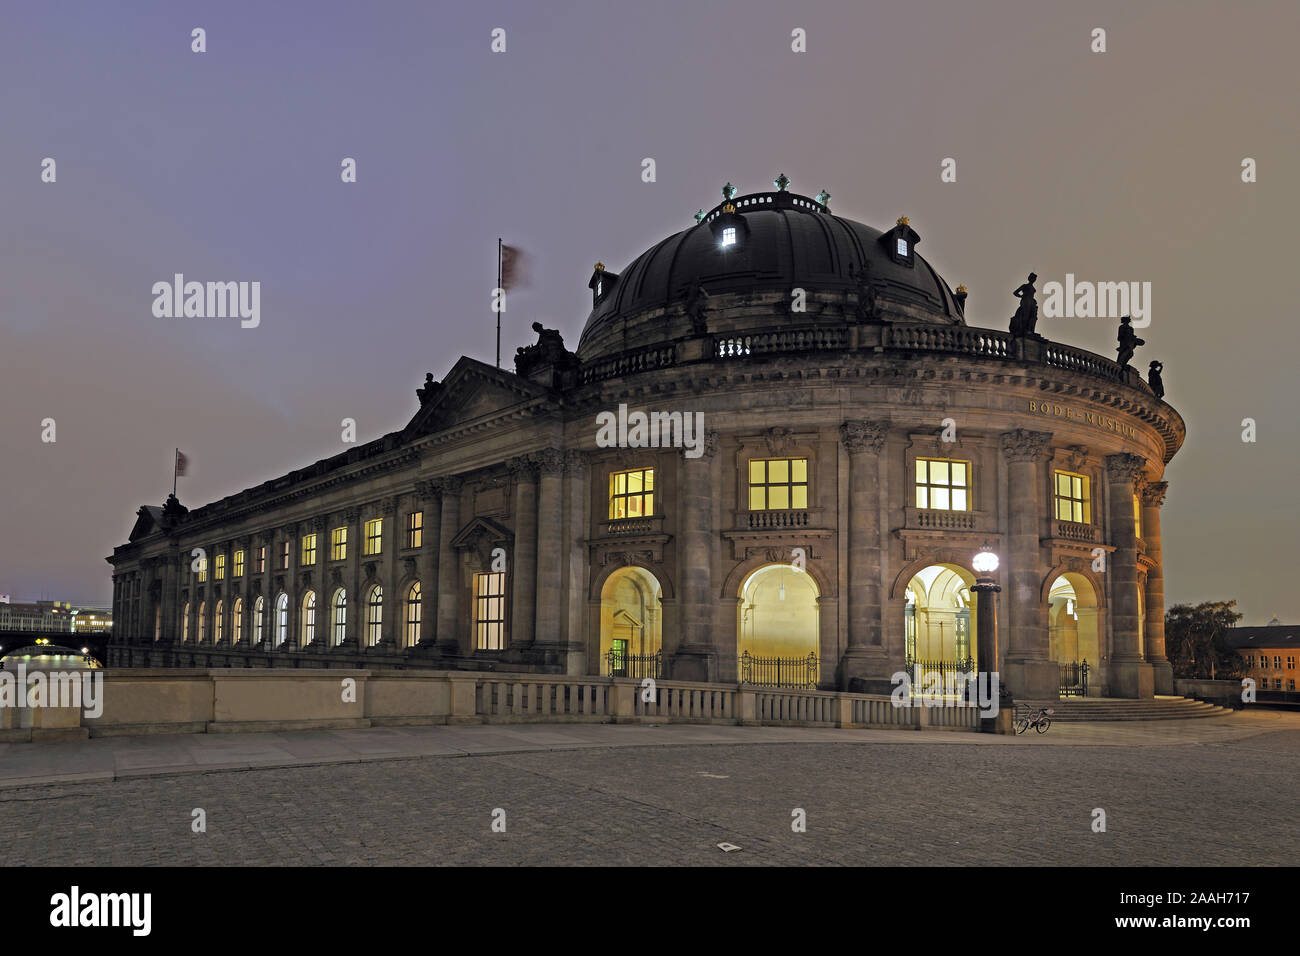 Bode Museum , Berlino, Museumsinsel, UNESCO Weltkulturerbe, Berlino, Deutschland, Europa, Nachtaufnahme Foto Stock